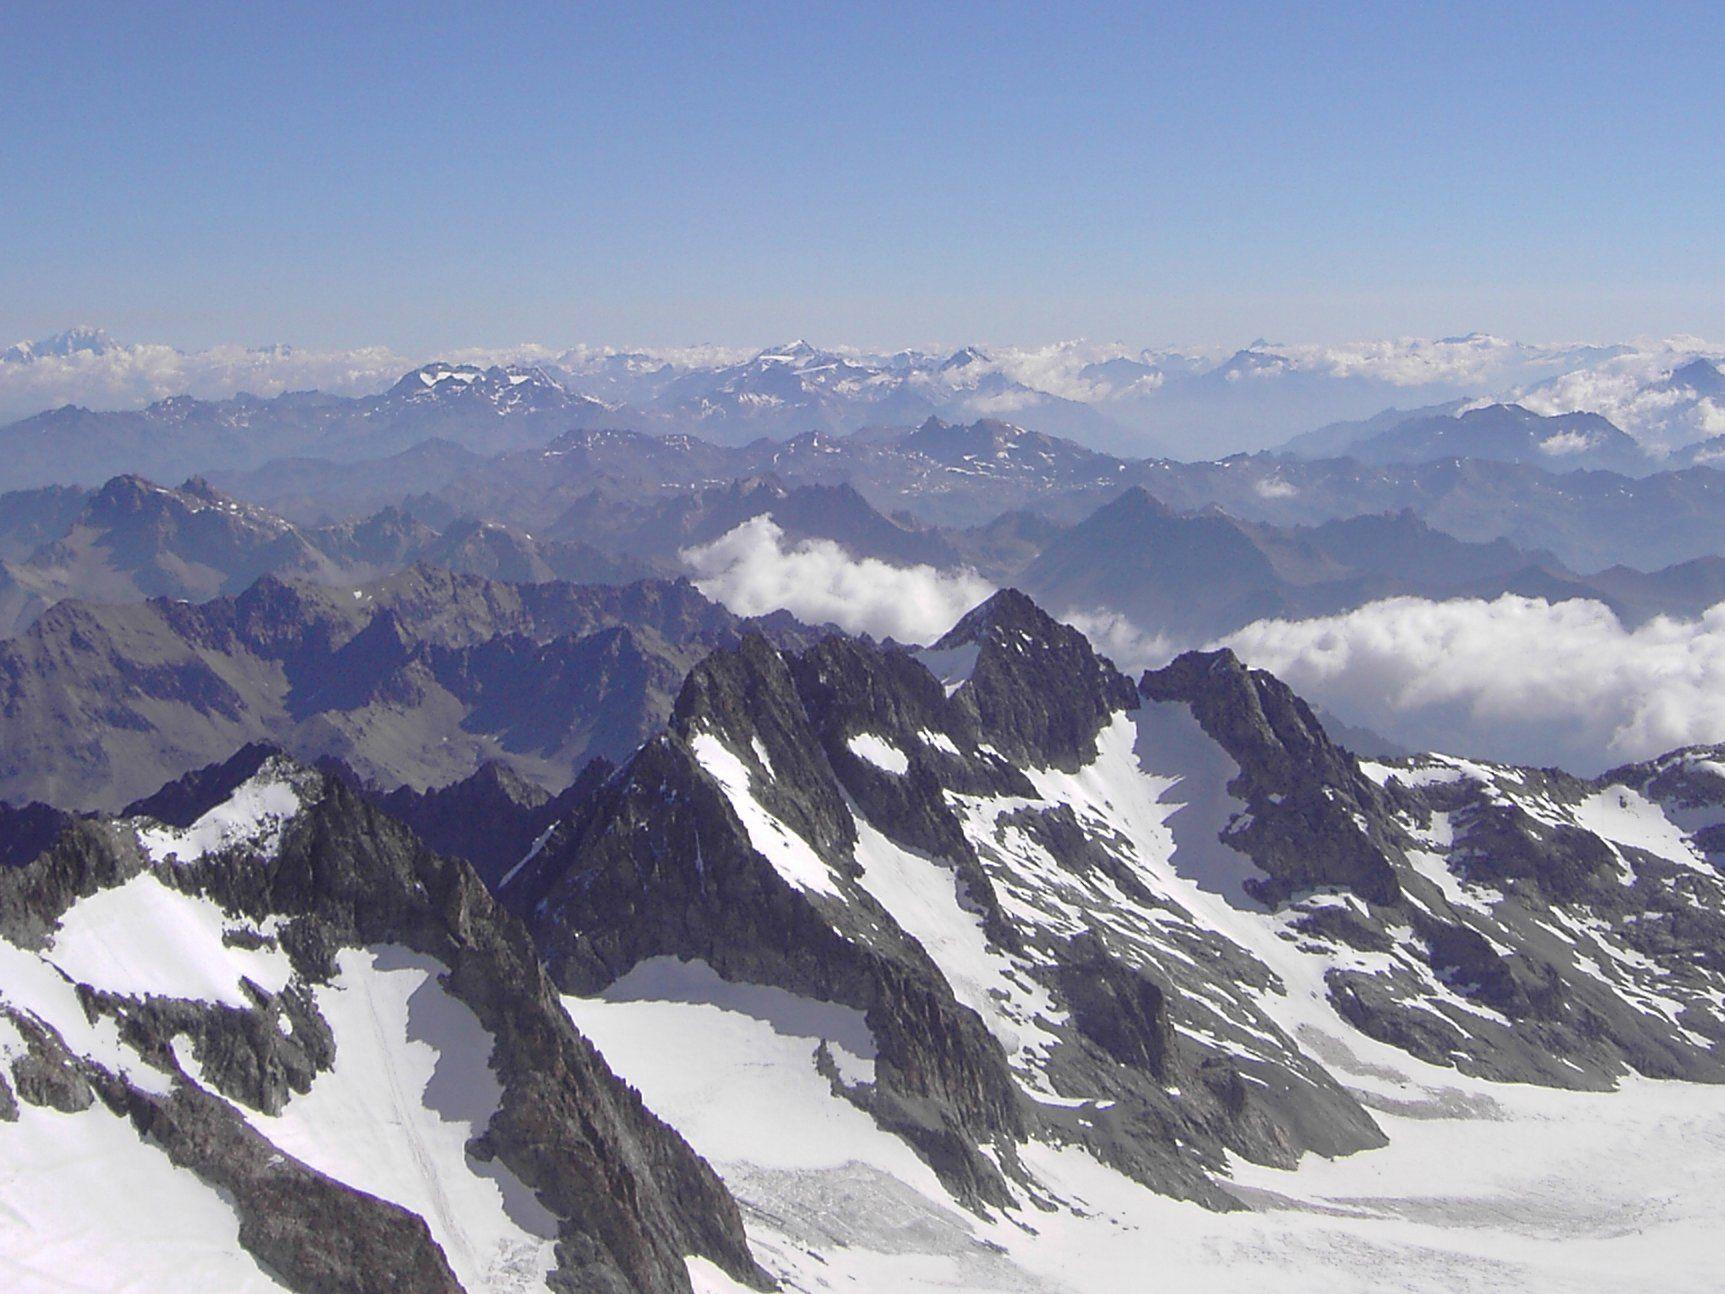 Die Alpinisten. die in Frankreich von einer Lawine erfasst wurden, werden noch nicht nach Österreich zurückkommen.